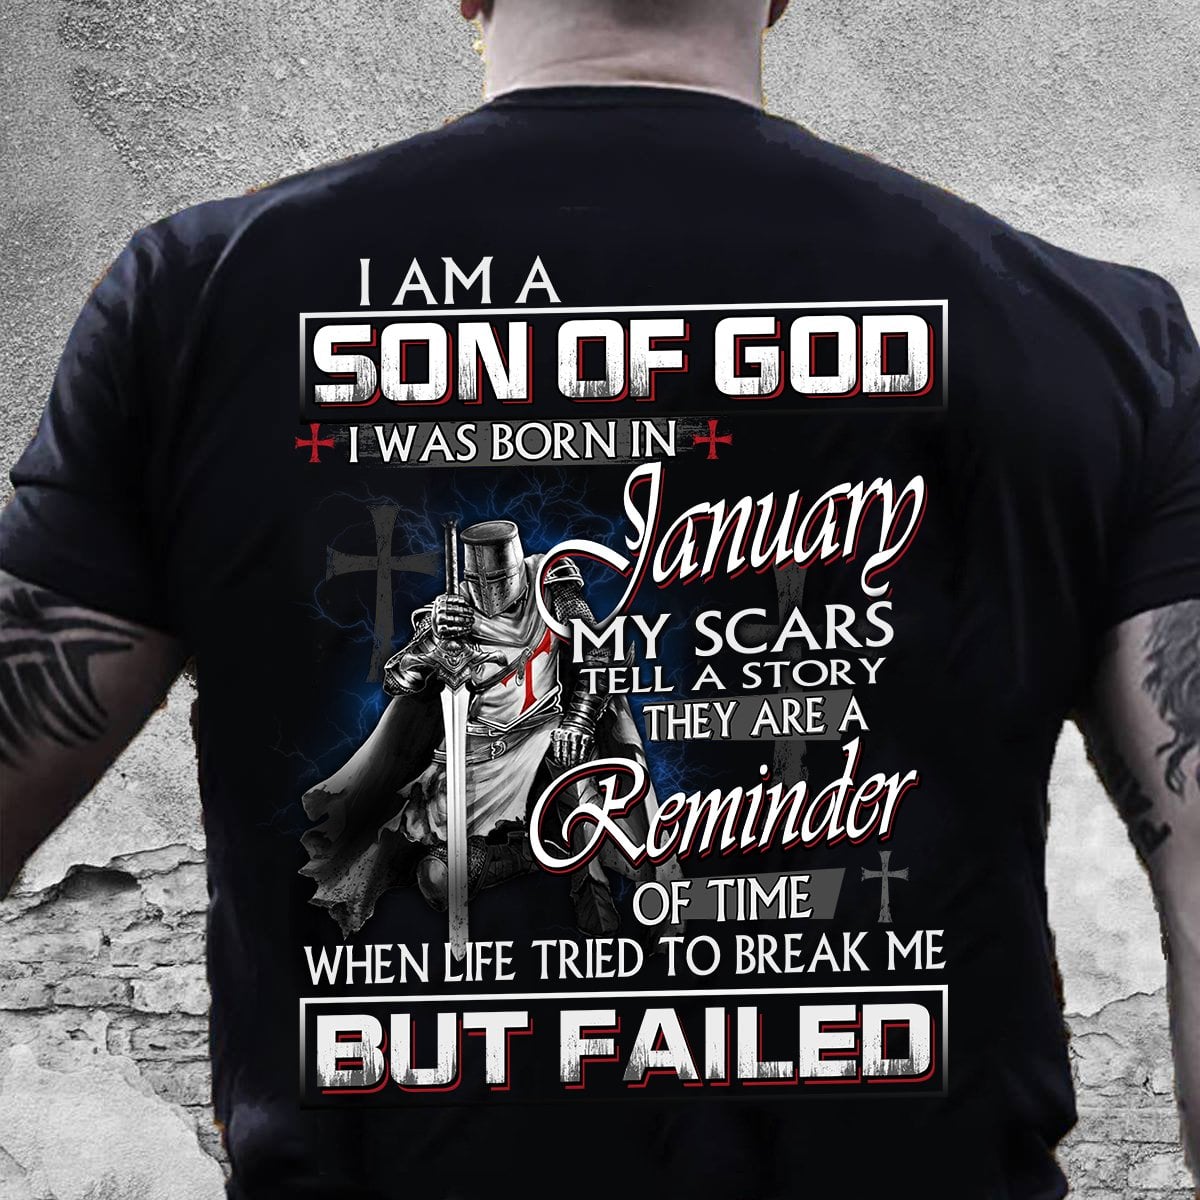 I am a son of god I was born in January - God's knight